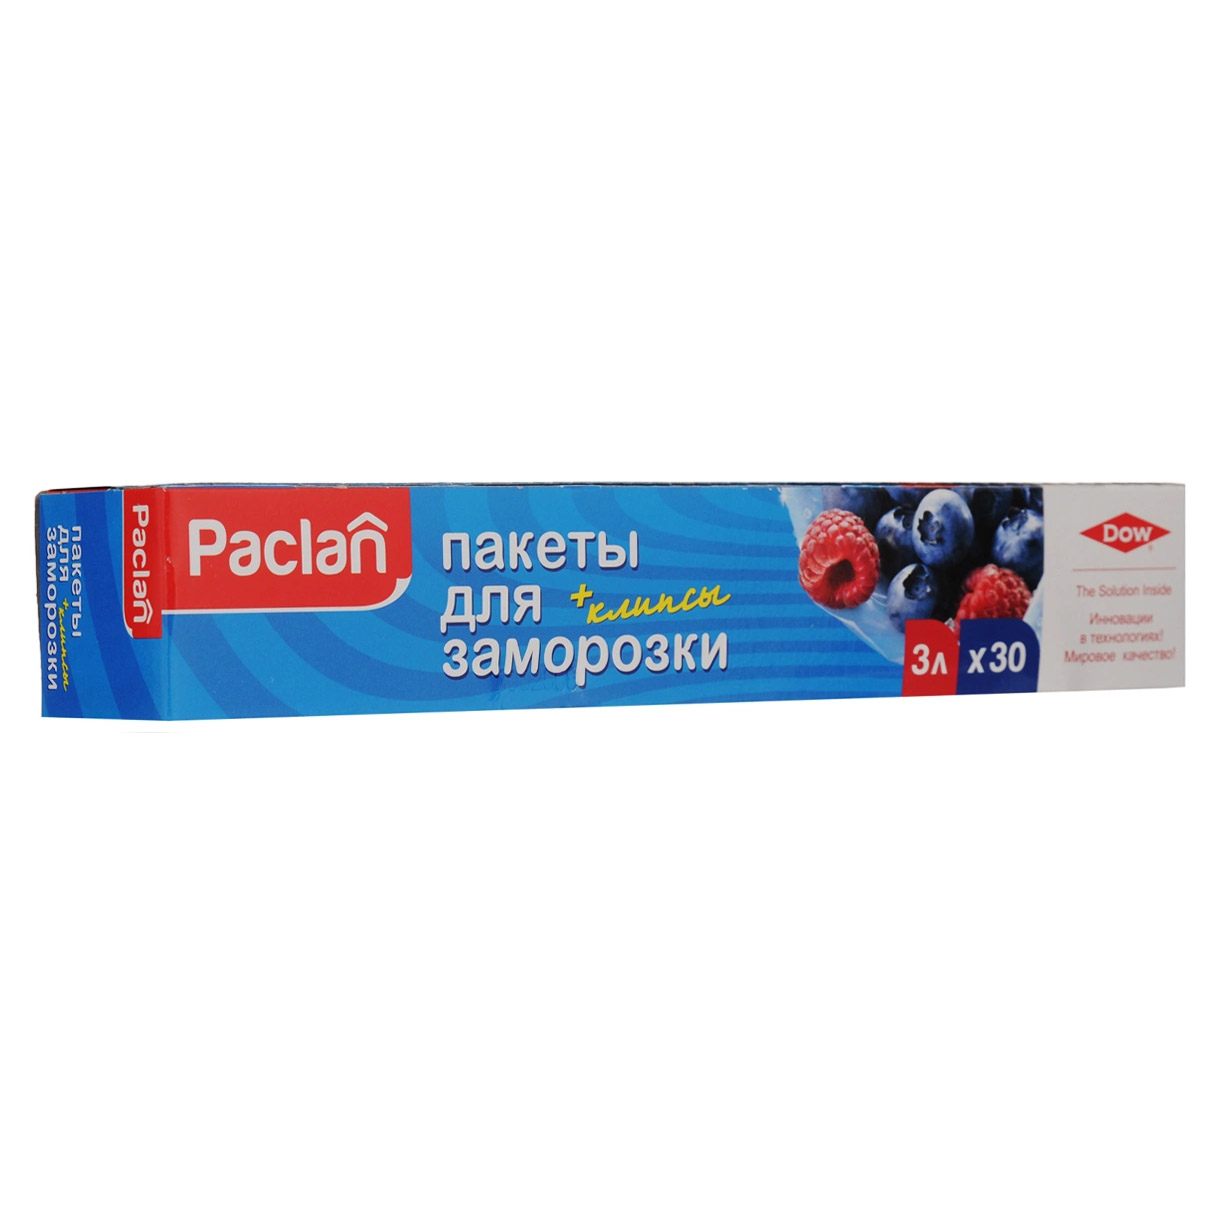 Пакеты Paclan для хранения и замораживания продуктов 3 л 30 шт